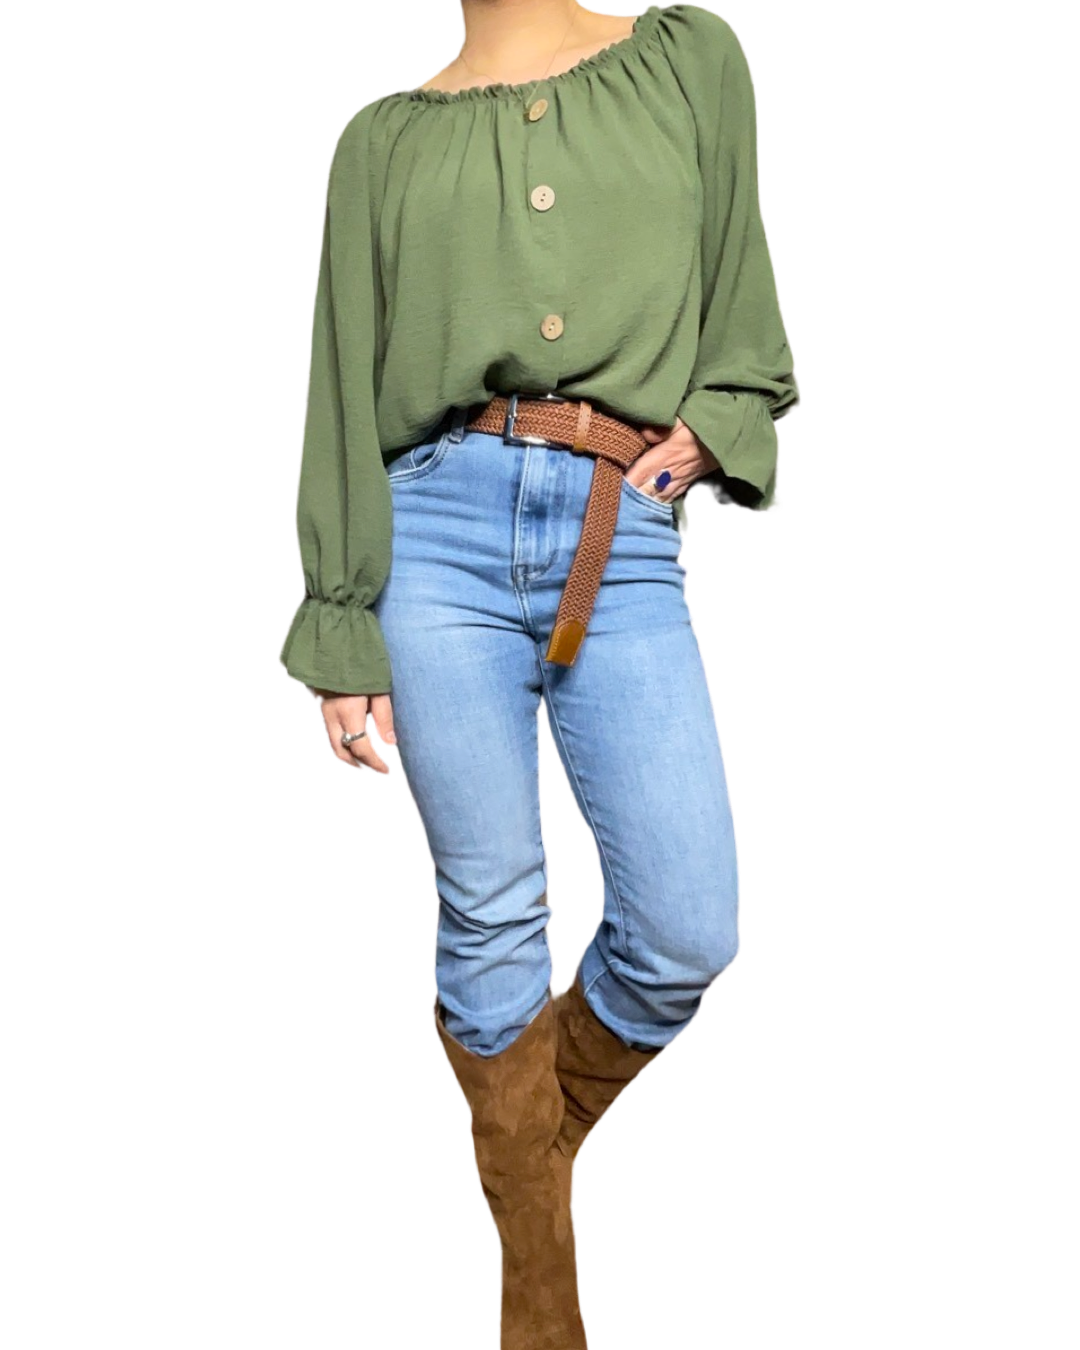 Blouse verte pour femme à manche longue avec ceinture, jeans et bottes marron. 